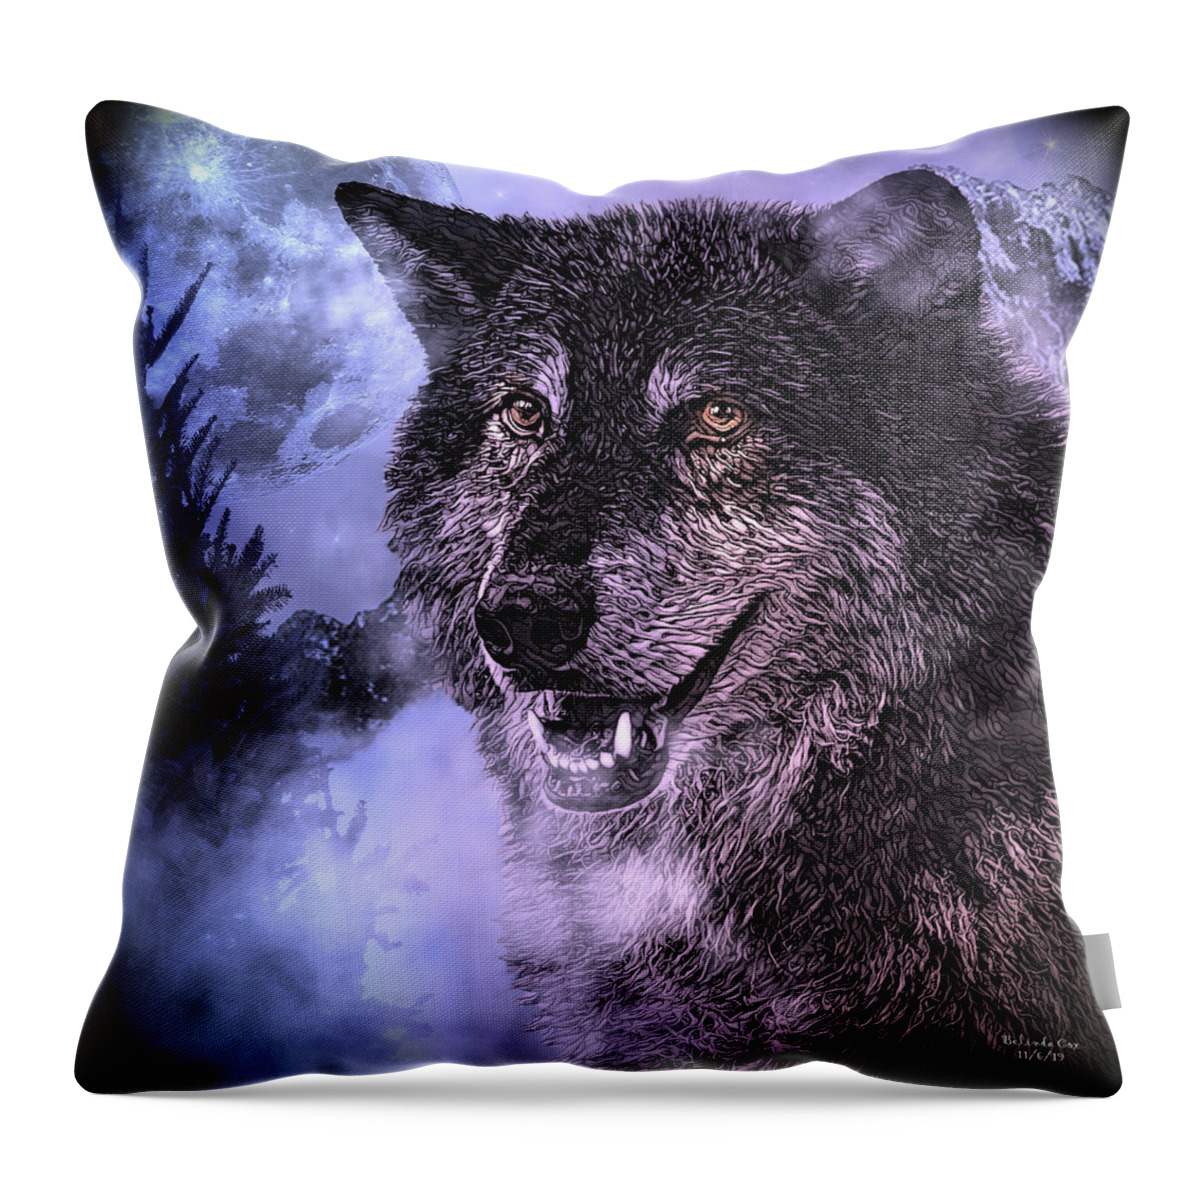 Digital Art Throw Pillow featuring the digital art Moonlights Beauty by Artful Oasis